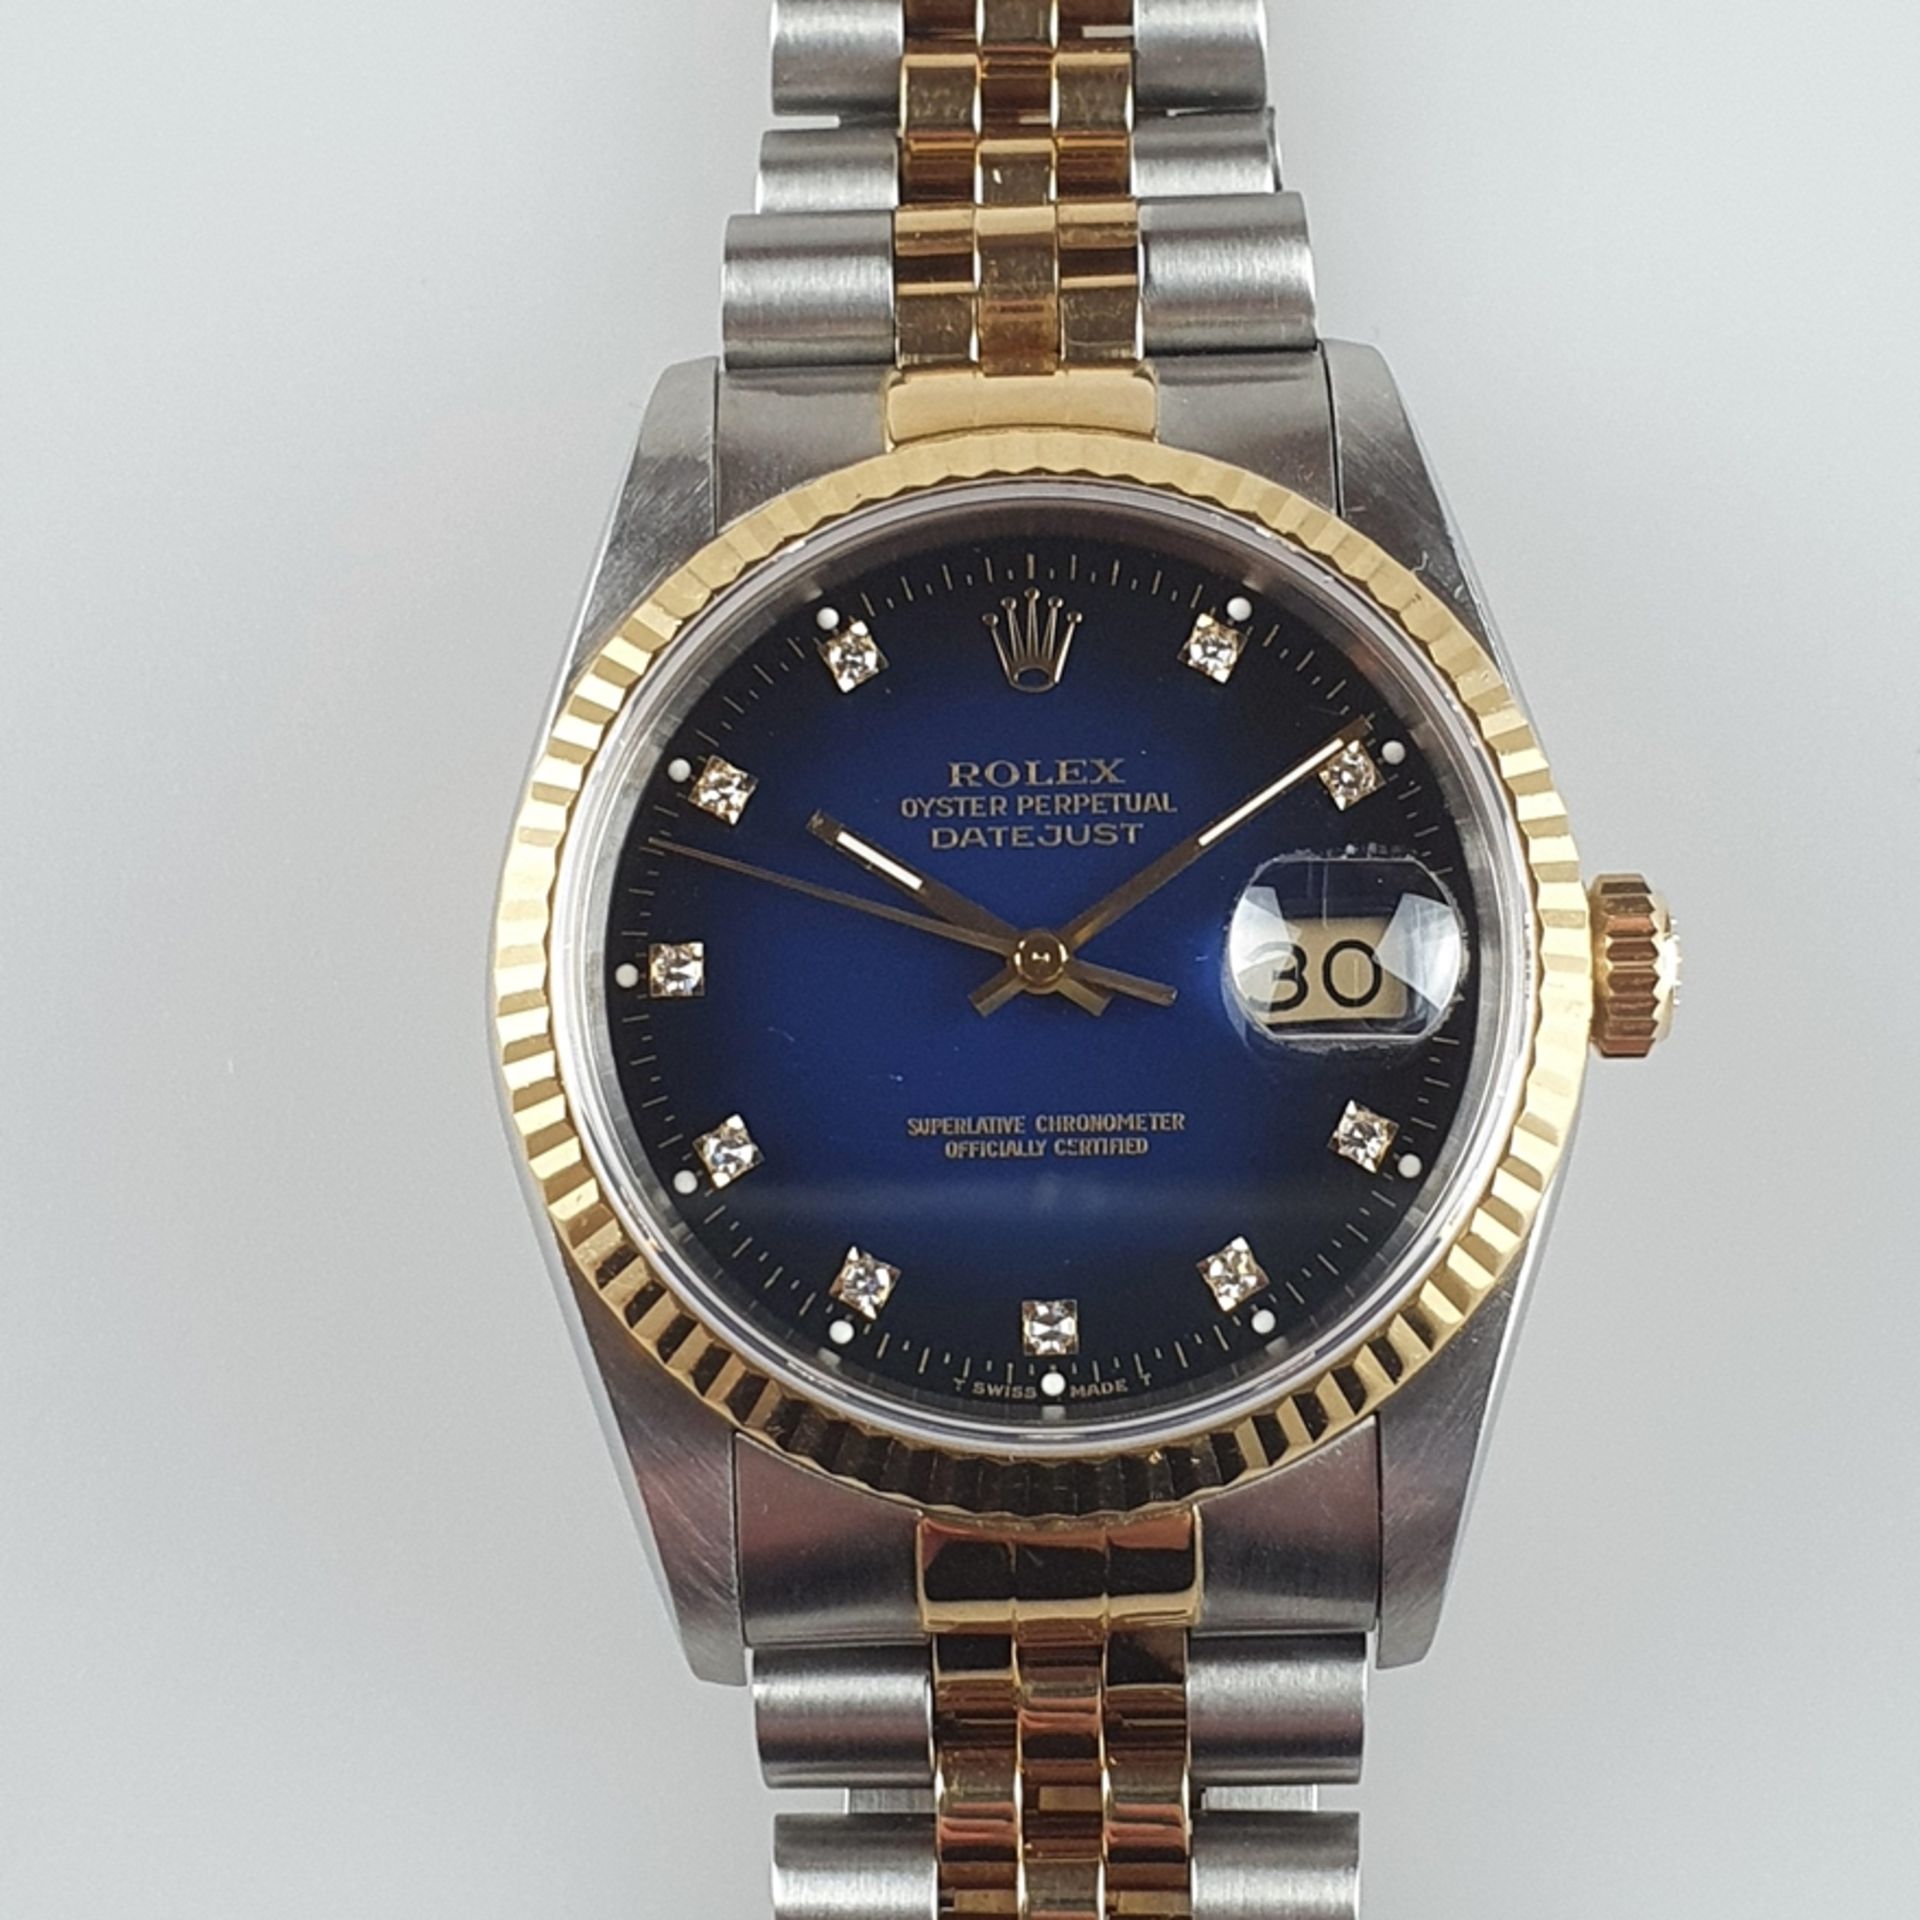 Rolex Oyster Perpetual Datejust - Chronometer in Stahl und Gold kombiniert, blaues Zifferblatt mit